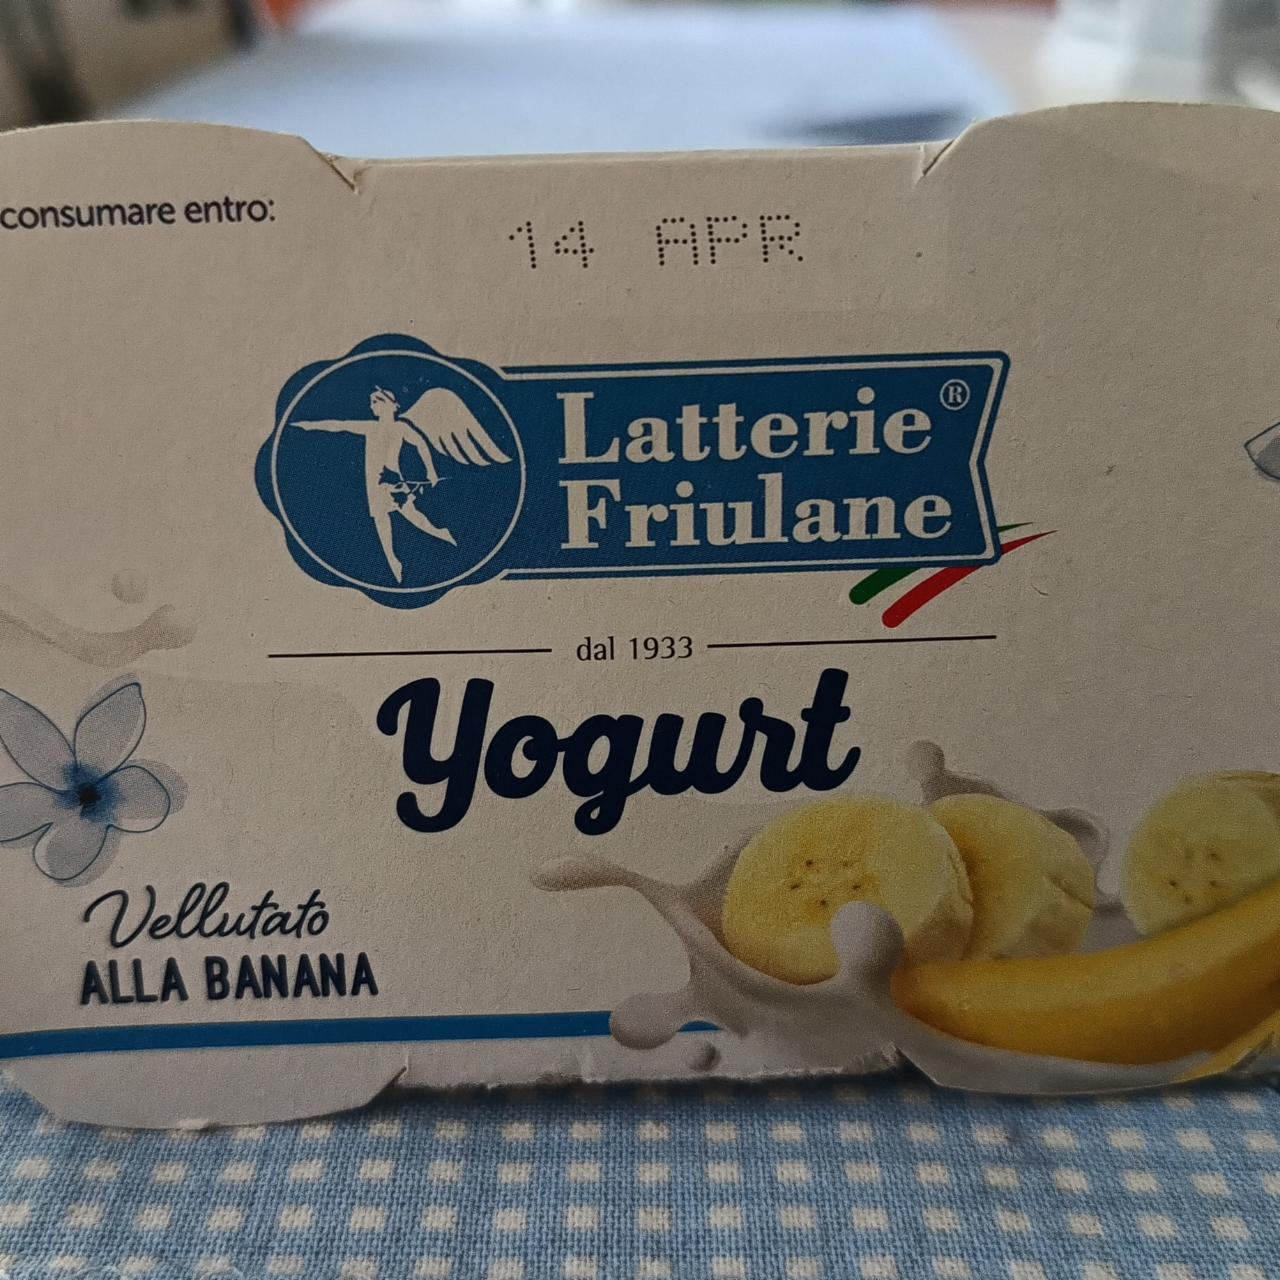 Fotografie - Yogurt Alla Banana Latterie Friulane